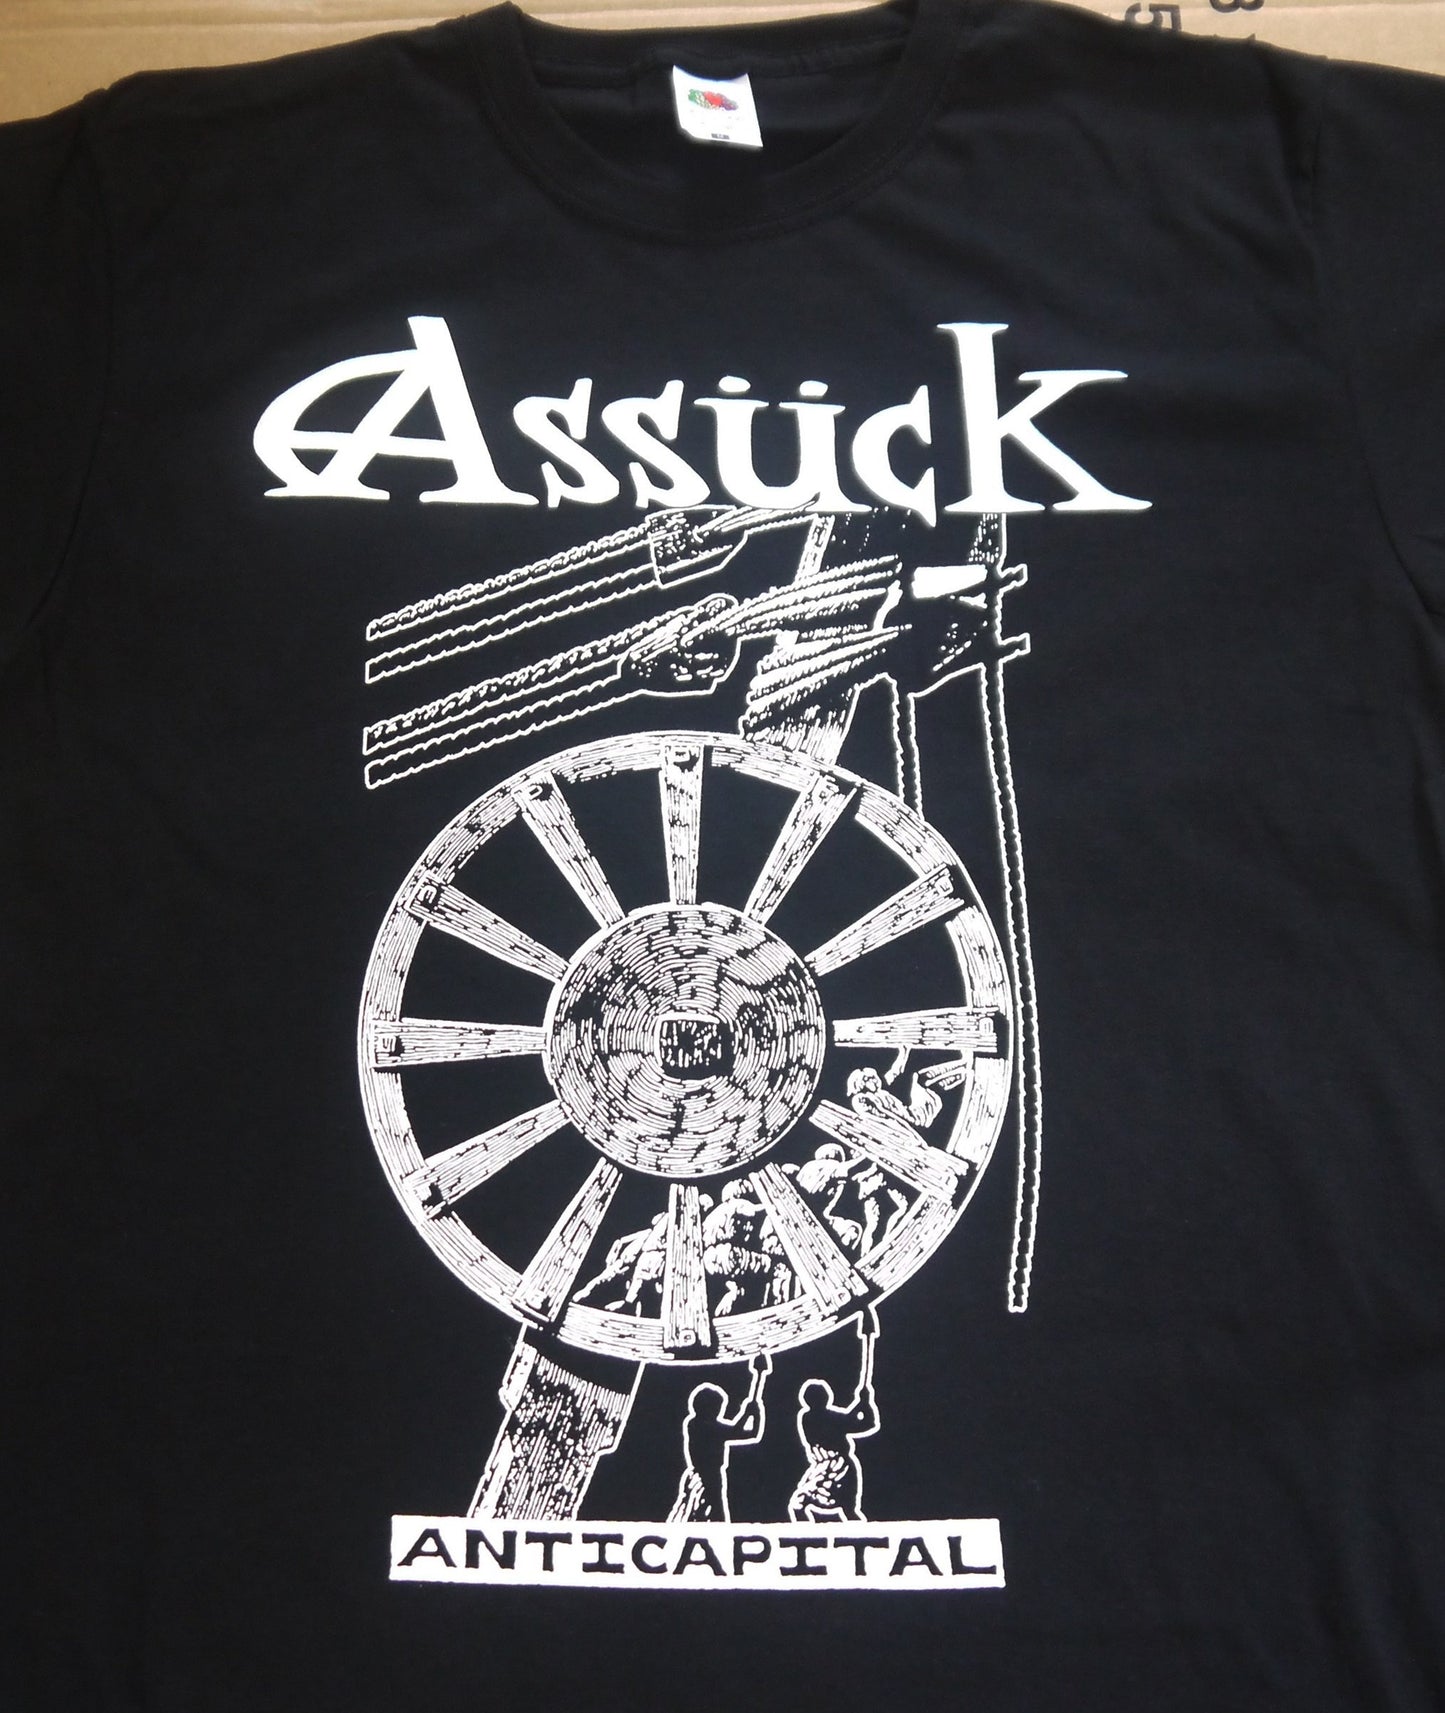 ASSUCK - Anticapital T-shirt